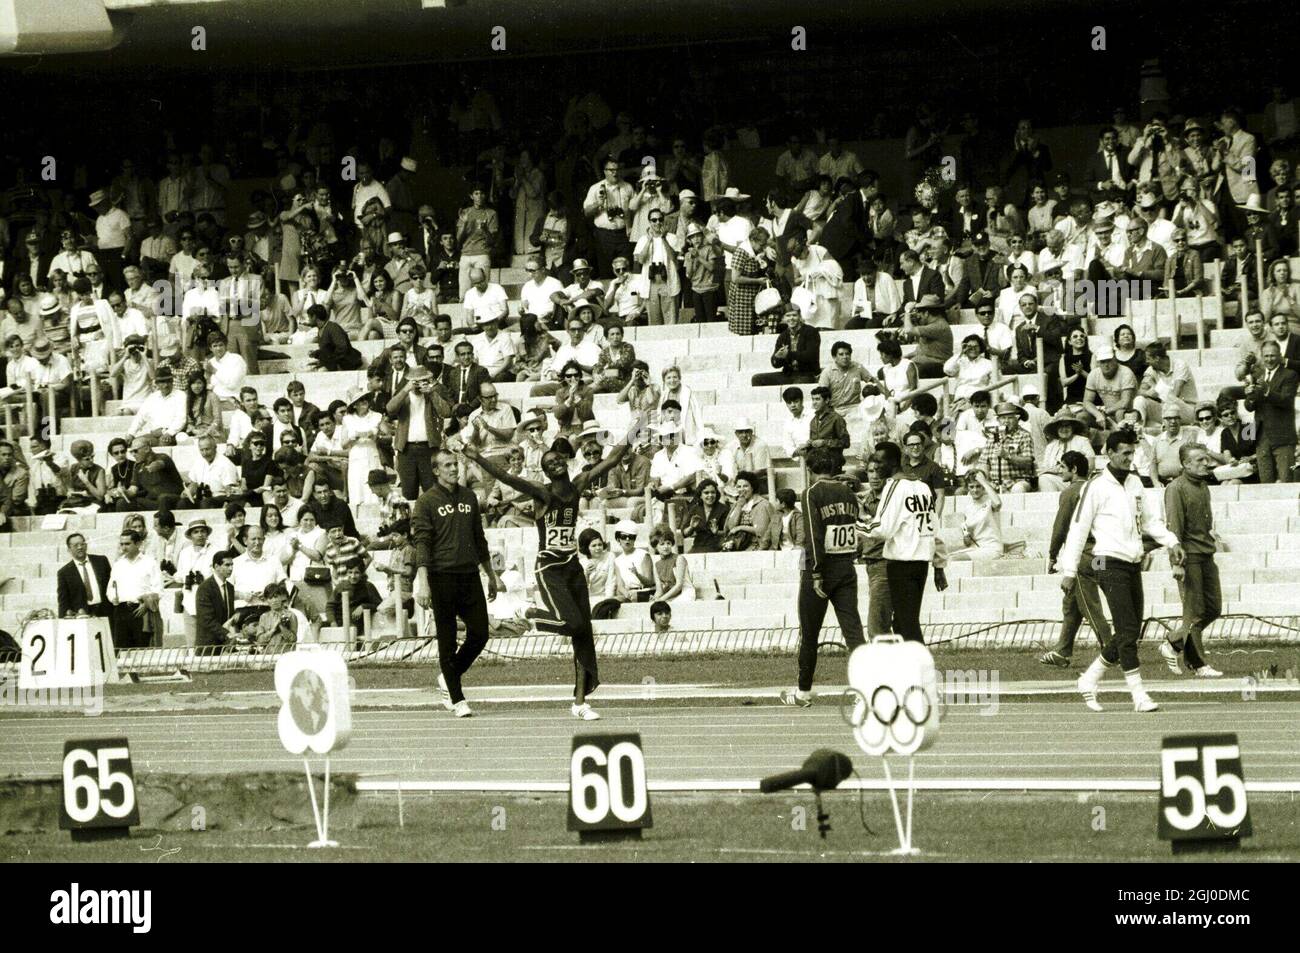 Olympische Spiele 1968, Mexiko Bob Beamon aus den USA ist das Anziehungspunkt für Fans, die bei den 19. Olympischen Spielen an den Leichtathletik-Events teilnehmen, nachdem er den Welt- und Olympiarekord im Weitsprung der Männer gebrochen hatte. Er sprang einen Rekord von 29 Fuß 2 & 1-2 Zoll. Oktober 1968. Stockfoto